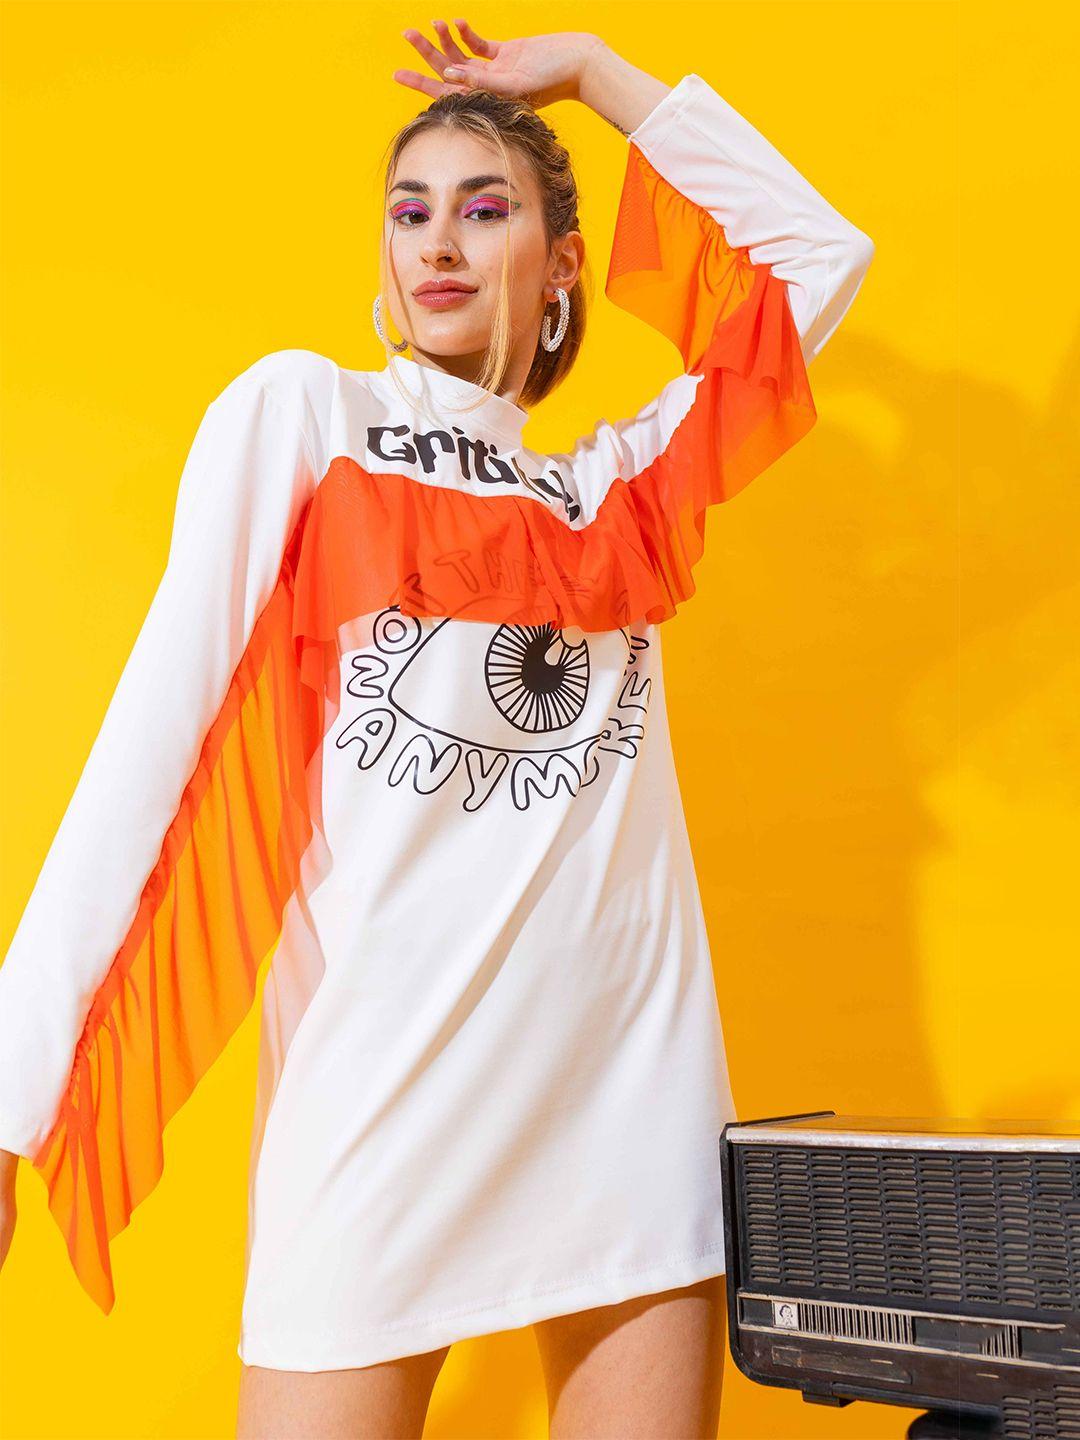 stylecast x hersheinbox white & orange graphic printed sheath dress